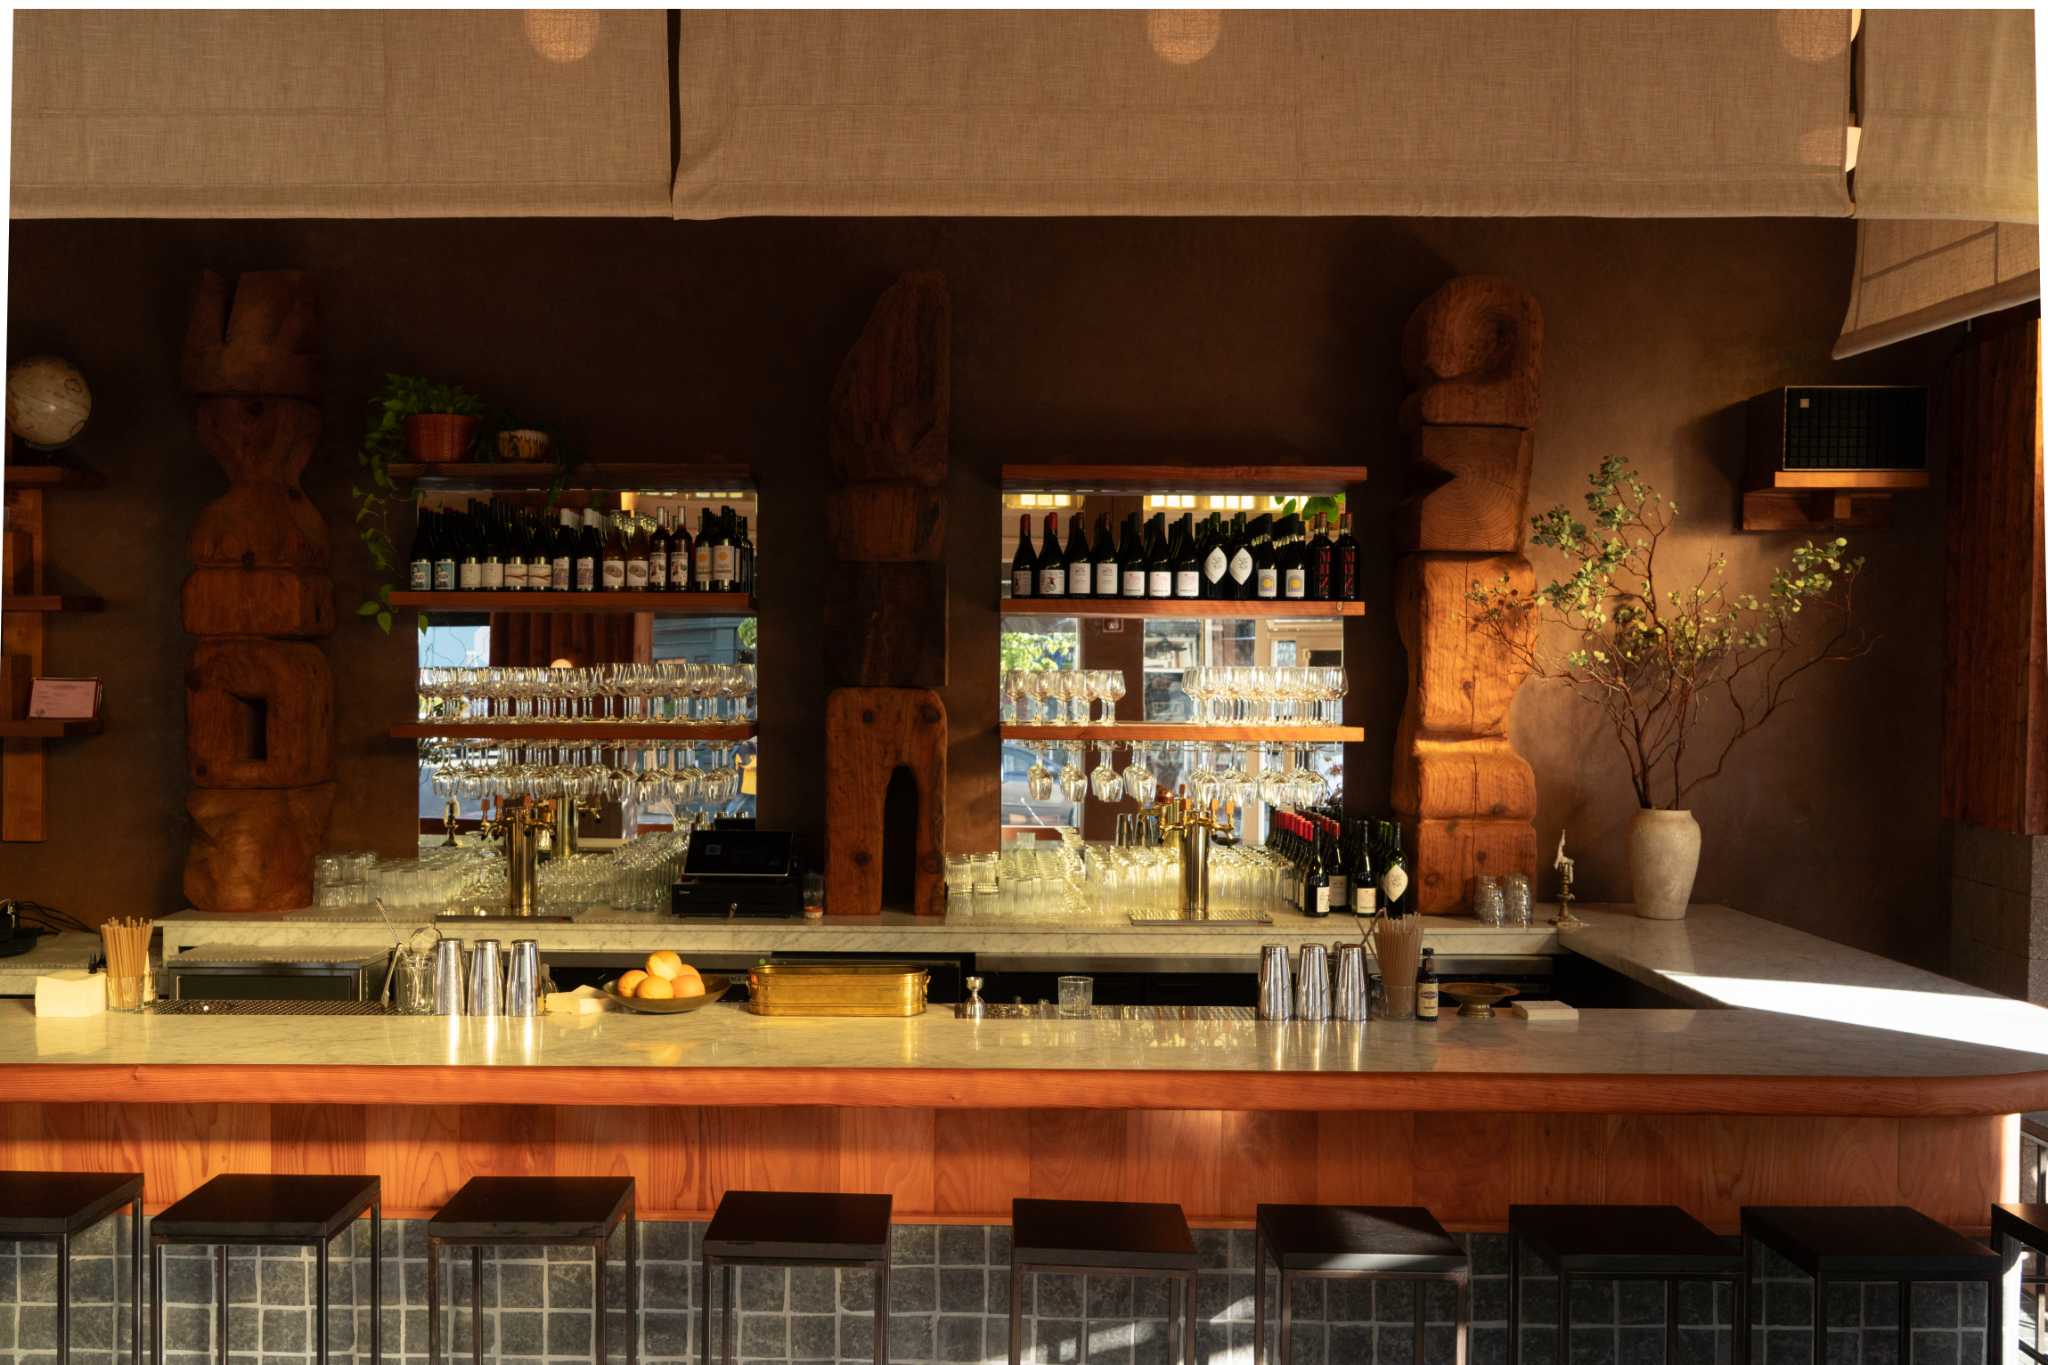 Voyage, le bar à vin des propriétaires de Stillwater, ouvre ses portes dans le comté de Marin.